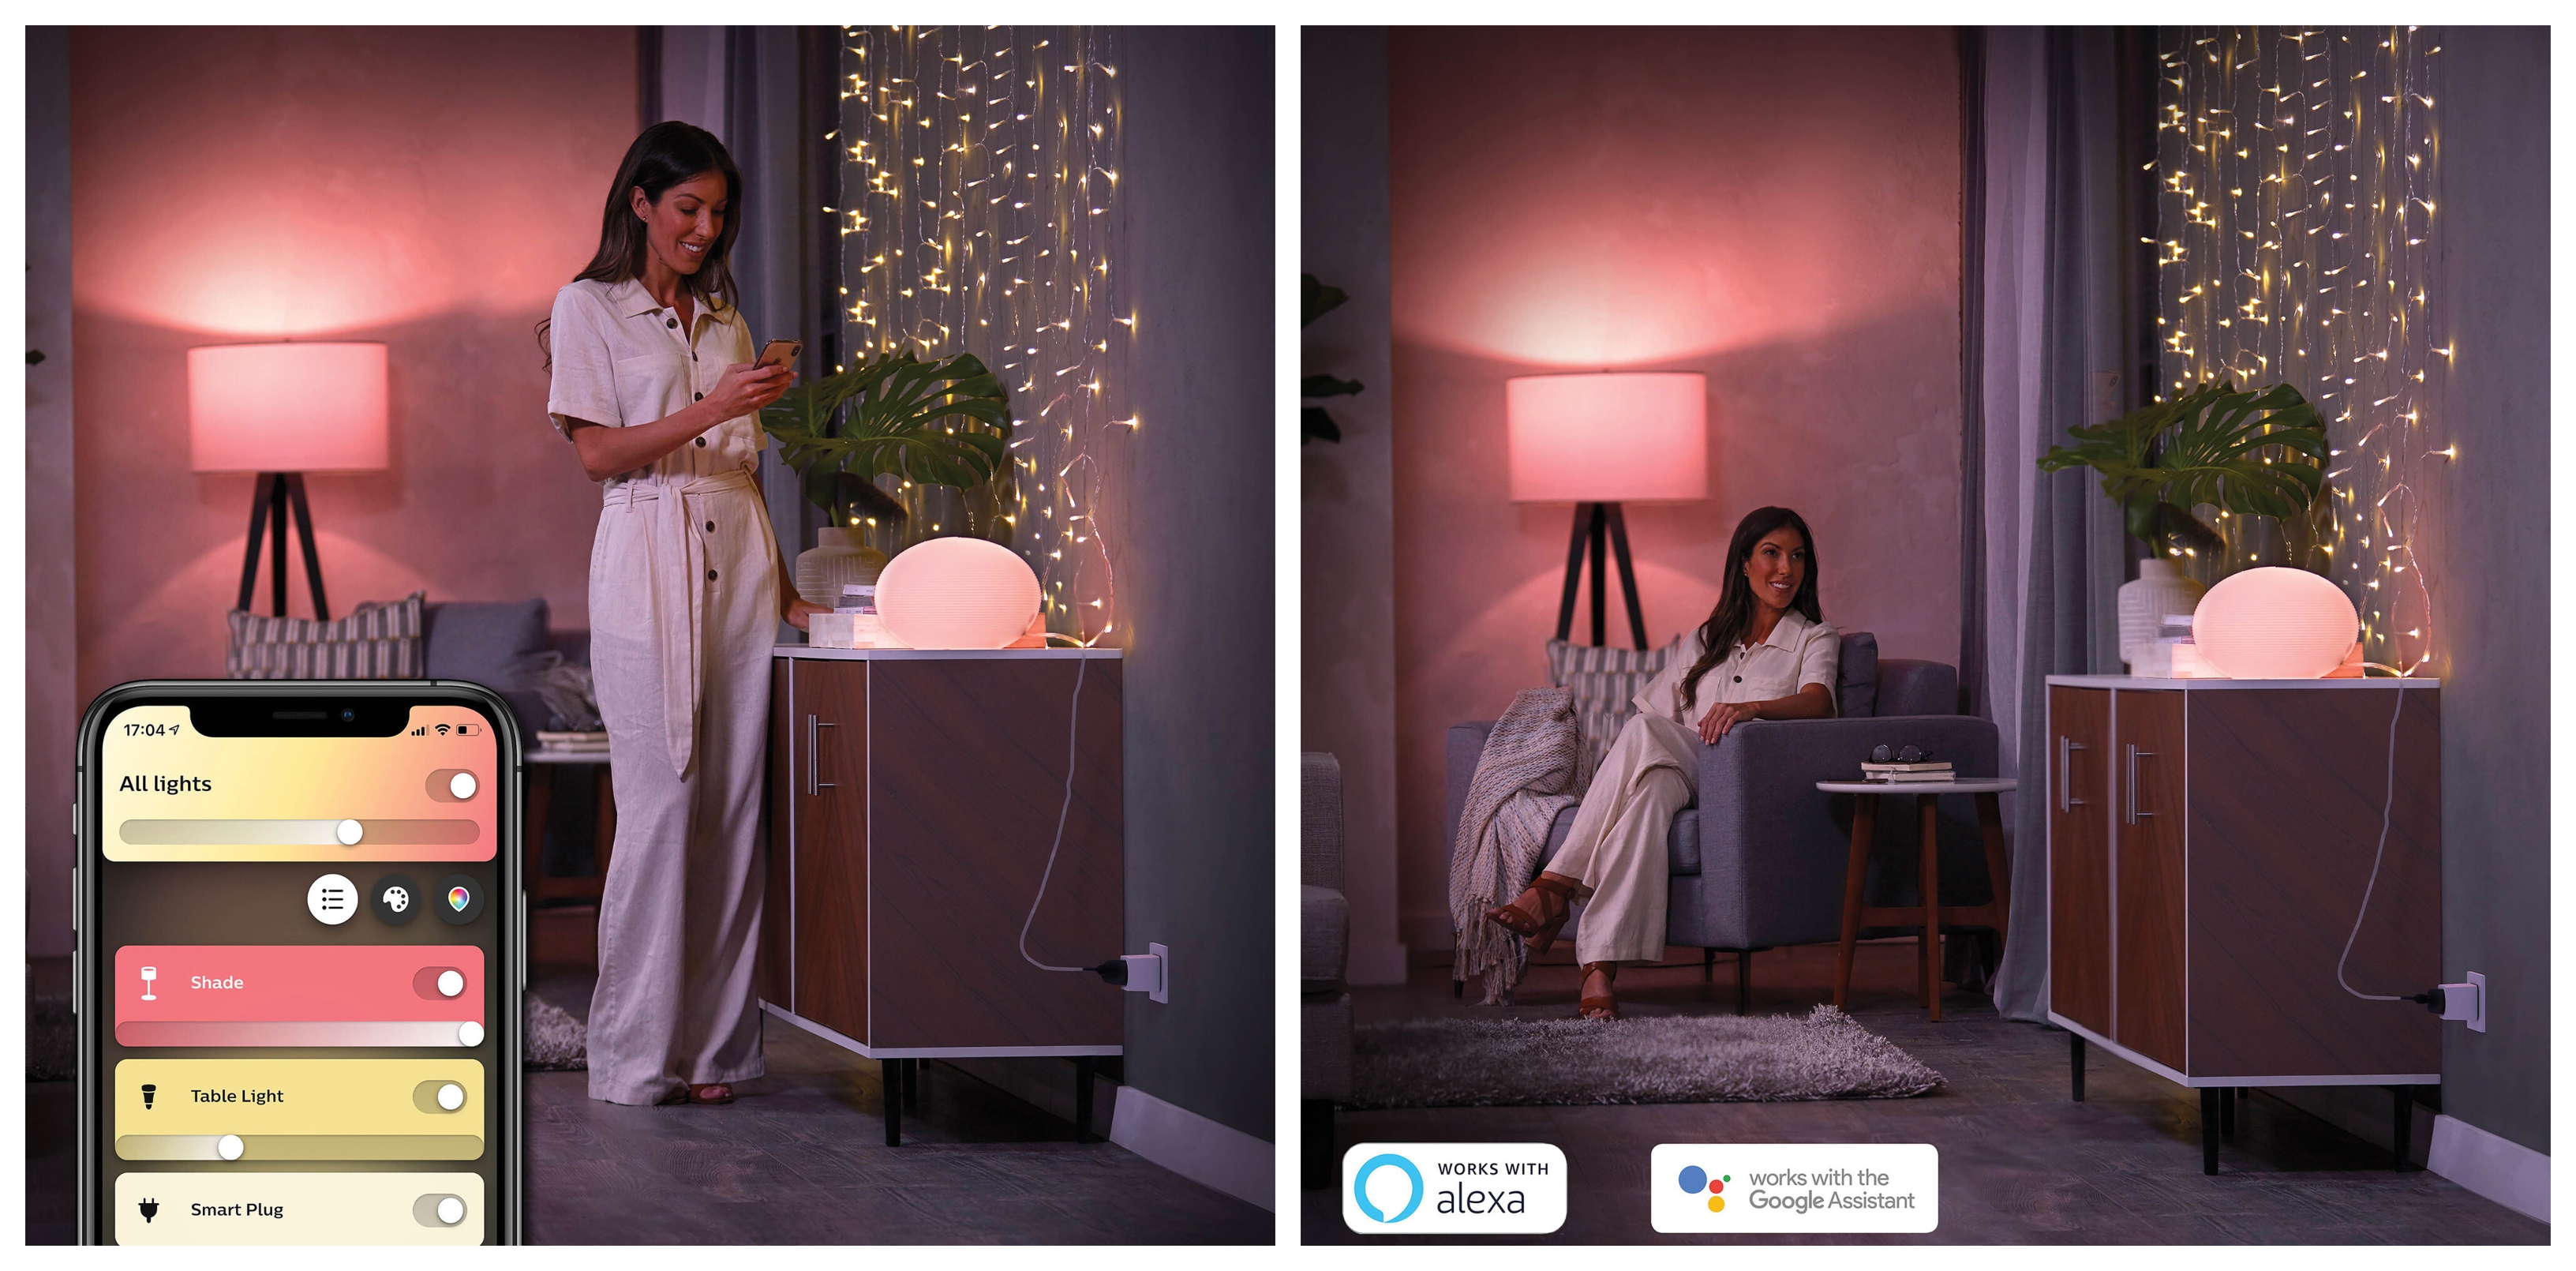 Chytrá zásuvka Philips Hue Smart Plug dokáže proměnit běžnou lampičku, žárovku a další svítidla na chytré osvětlení, které je plně kompatibilní s mobilní aplikací Hue a s hlasovými asistenty Apple HomeKit, Google Assistant, Amazon Alexa či Microsoft Cortana.